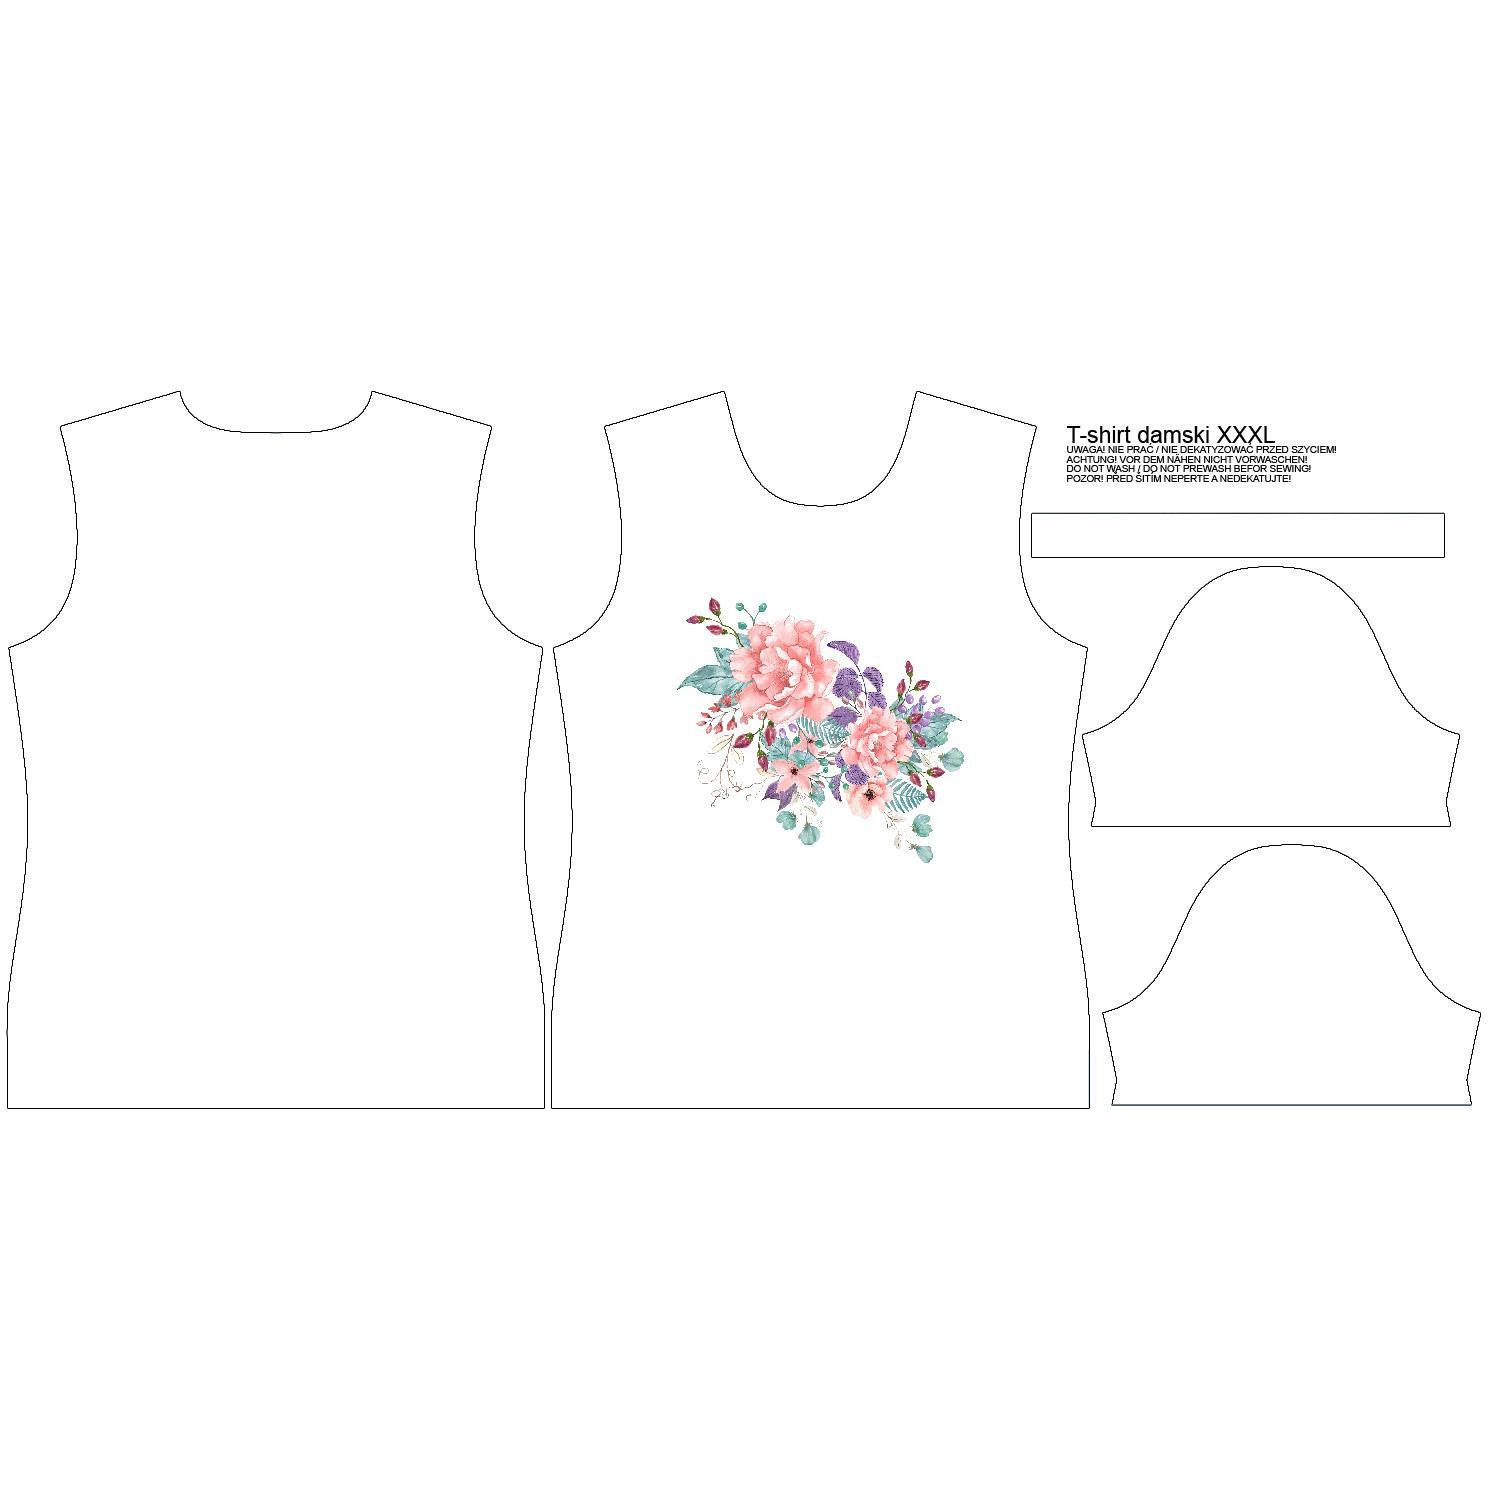 WOMEN’S T-SHIRT S - WILD ROSE FLOWERS PAT. 1 (BLOOMING MEADOW) - single jersey 